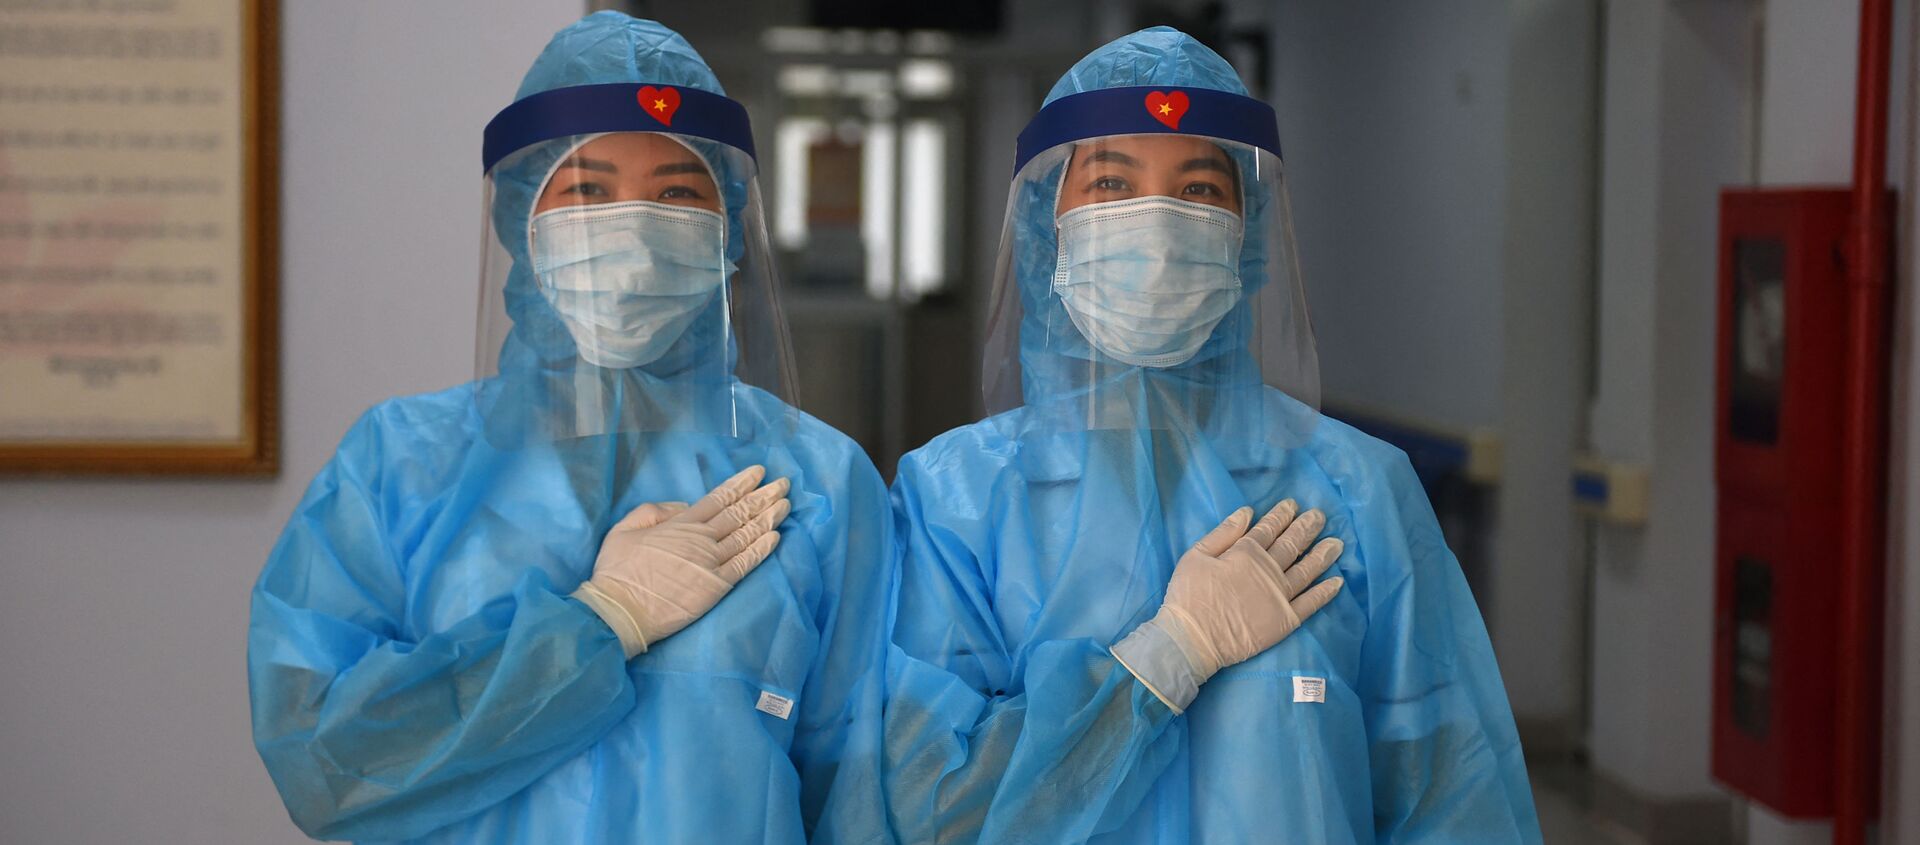 Các nữ nhân viên y tế mặc quần áo bảo hộ tại trung tâm xét nghiệm coronavirus dã chiến ở Hà Nội, Việt Nam - Sputnik Việt Nam, 1920, 08.03.2021